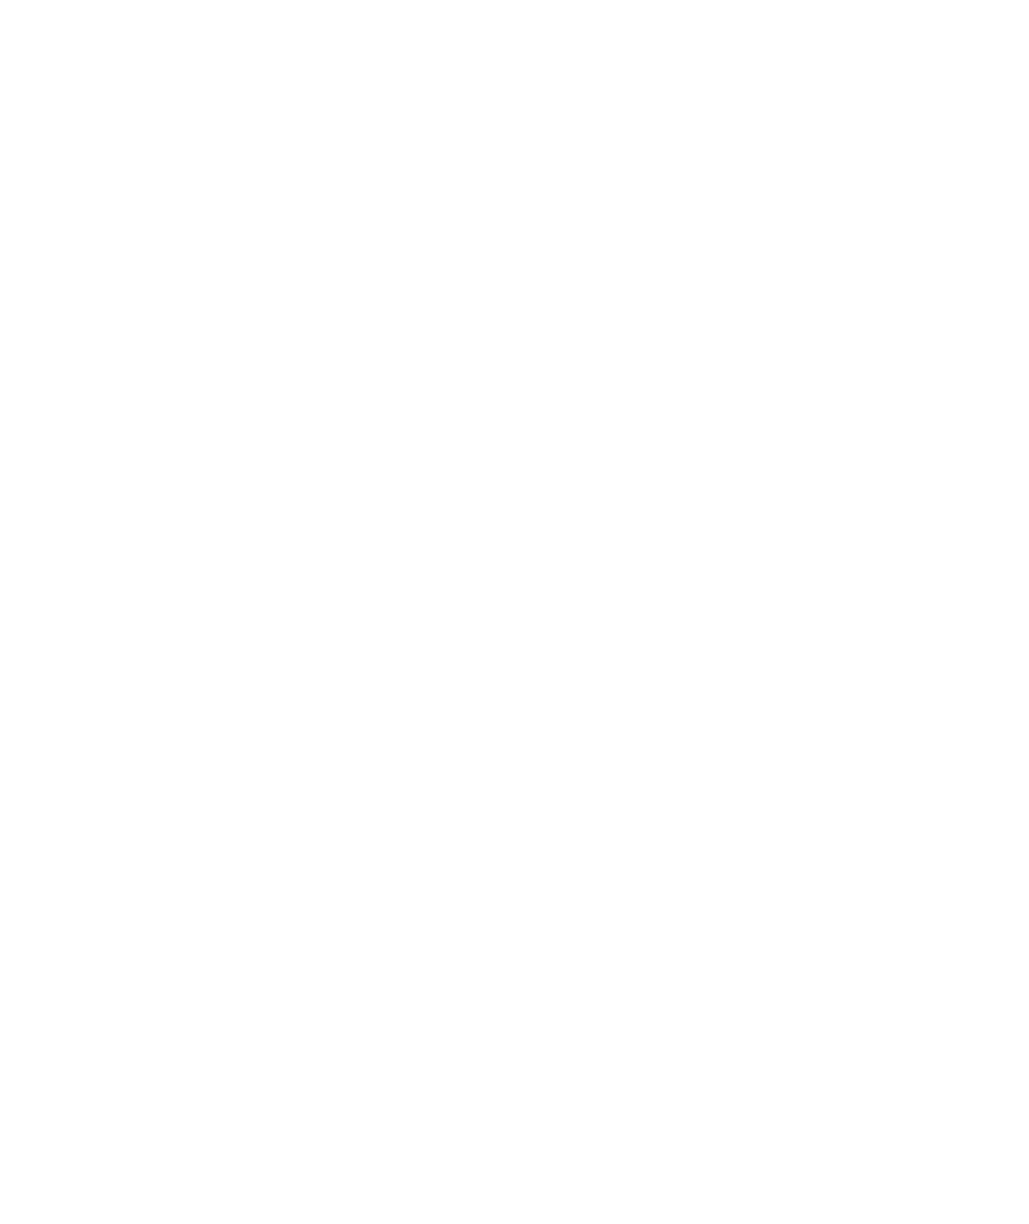 PEG - Property Exchange Group